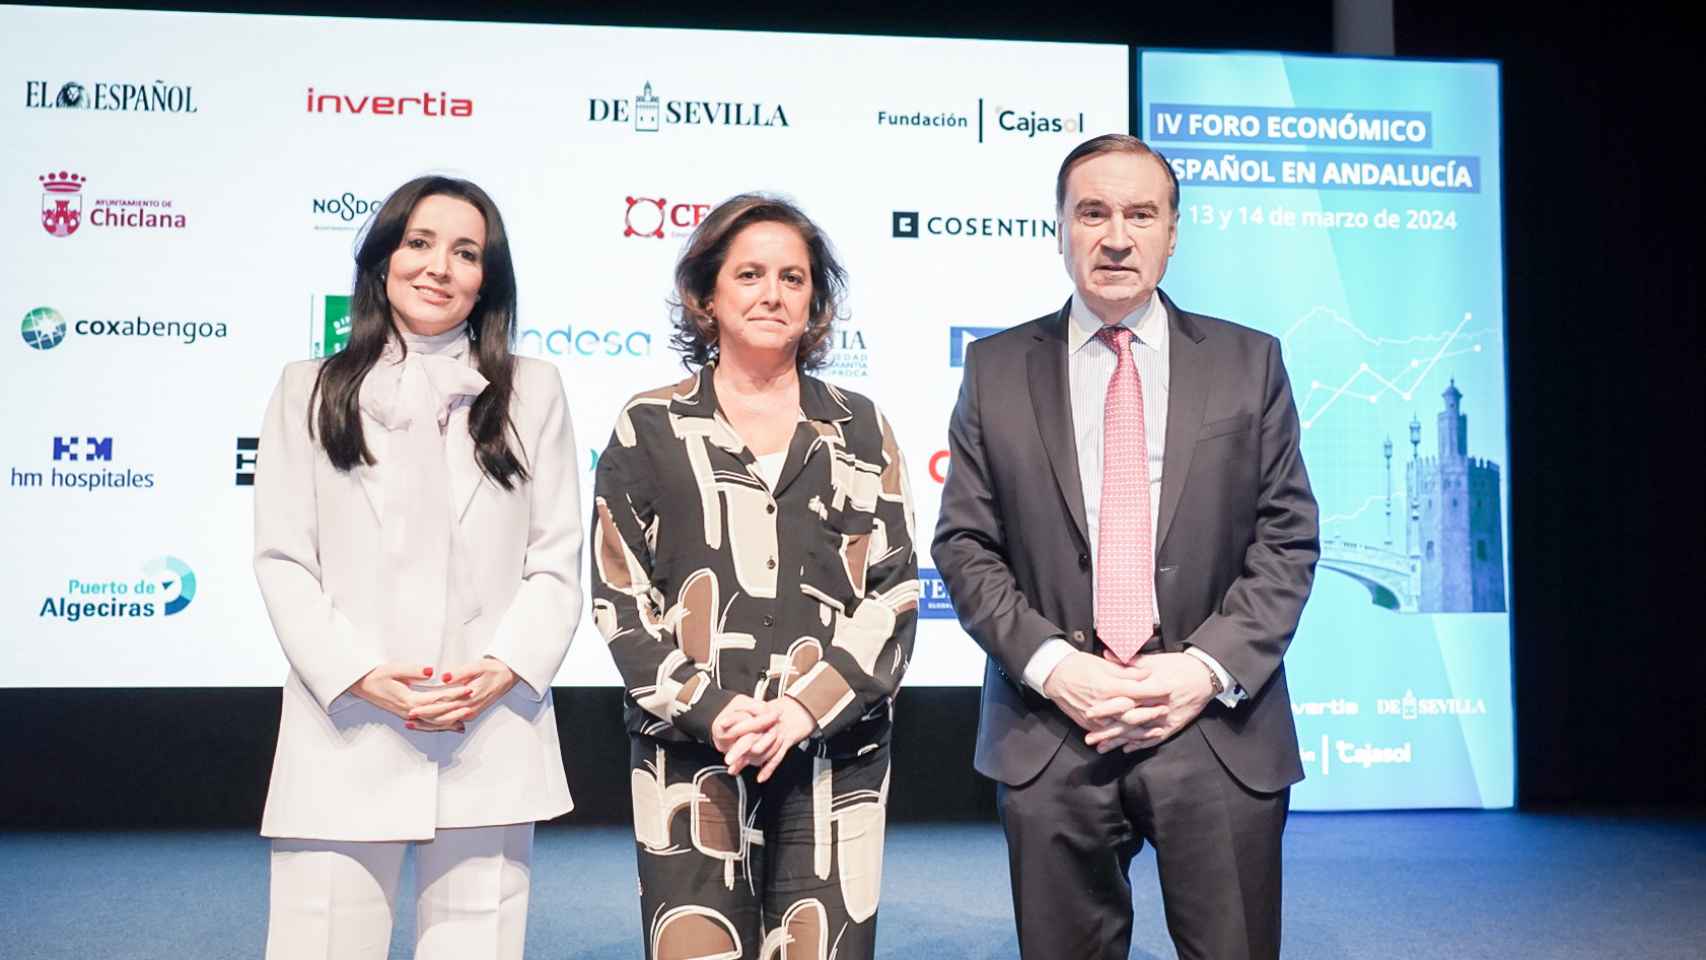 Segunda jornada del IV Foro Económico Español en Andalucía